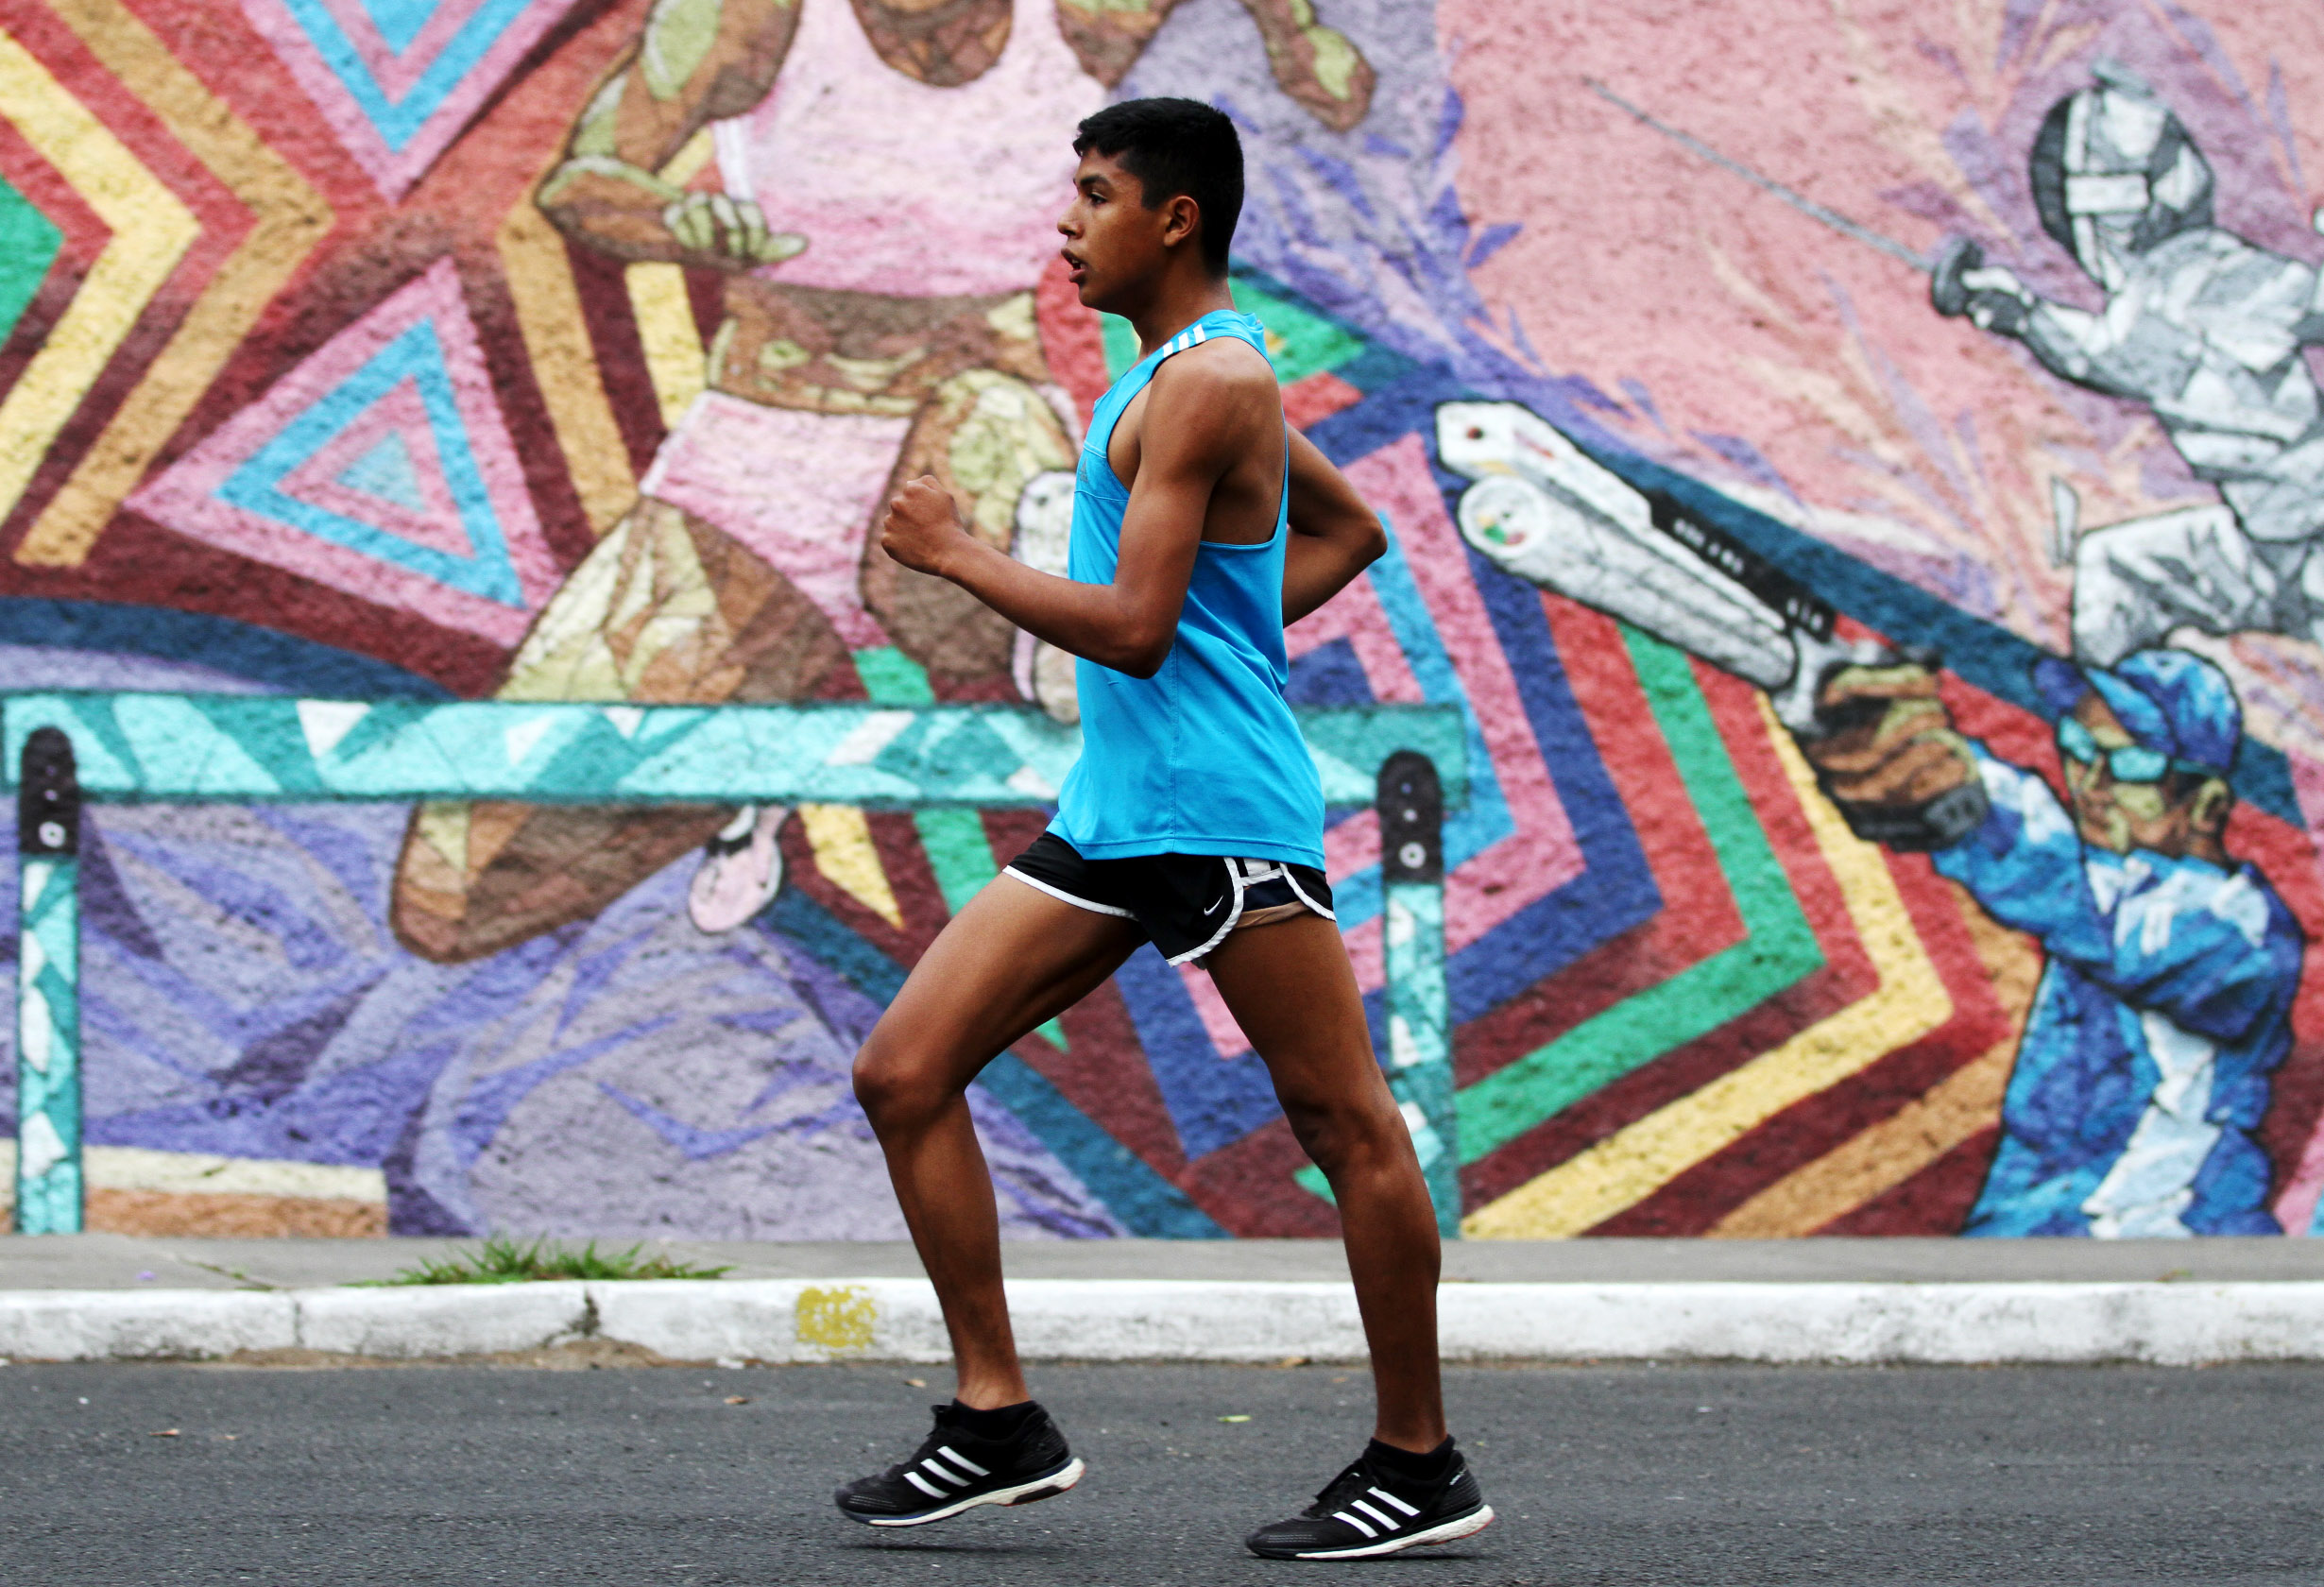 Con apenas 21 años, José Ortiz se ha ganado un lugar en la élite de la marcha guatemalteca, basado en su esfuerzo y grandes resultados. Foto Prensa Libre: COG.